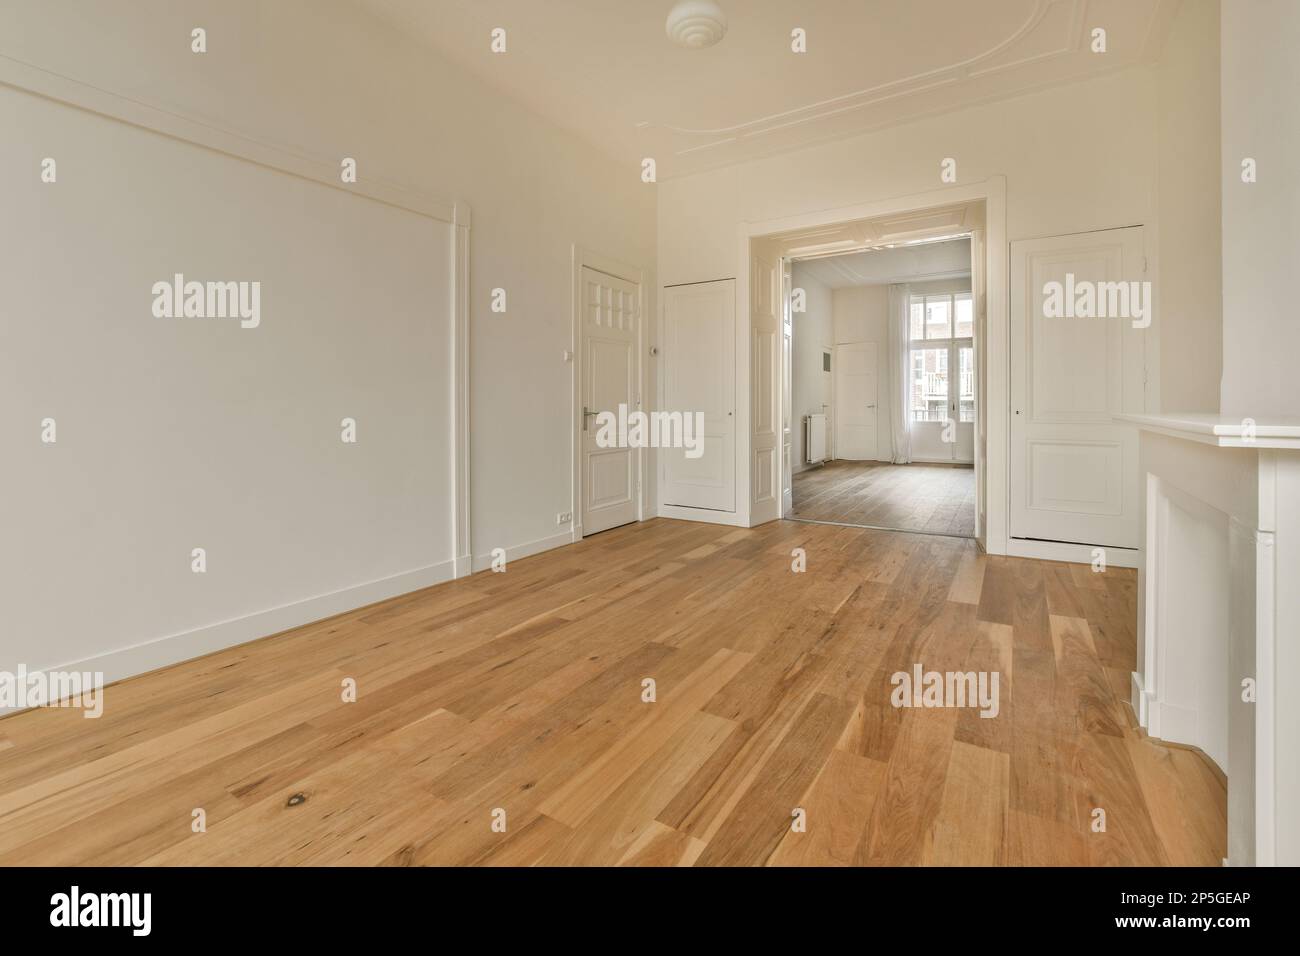 un soggiorno vuoto con pavimenti in legno duro e rifiniture bianche sulle pareti c'è una porta che conduce ad un'altra stanza Foto Stock